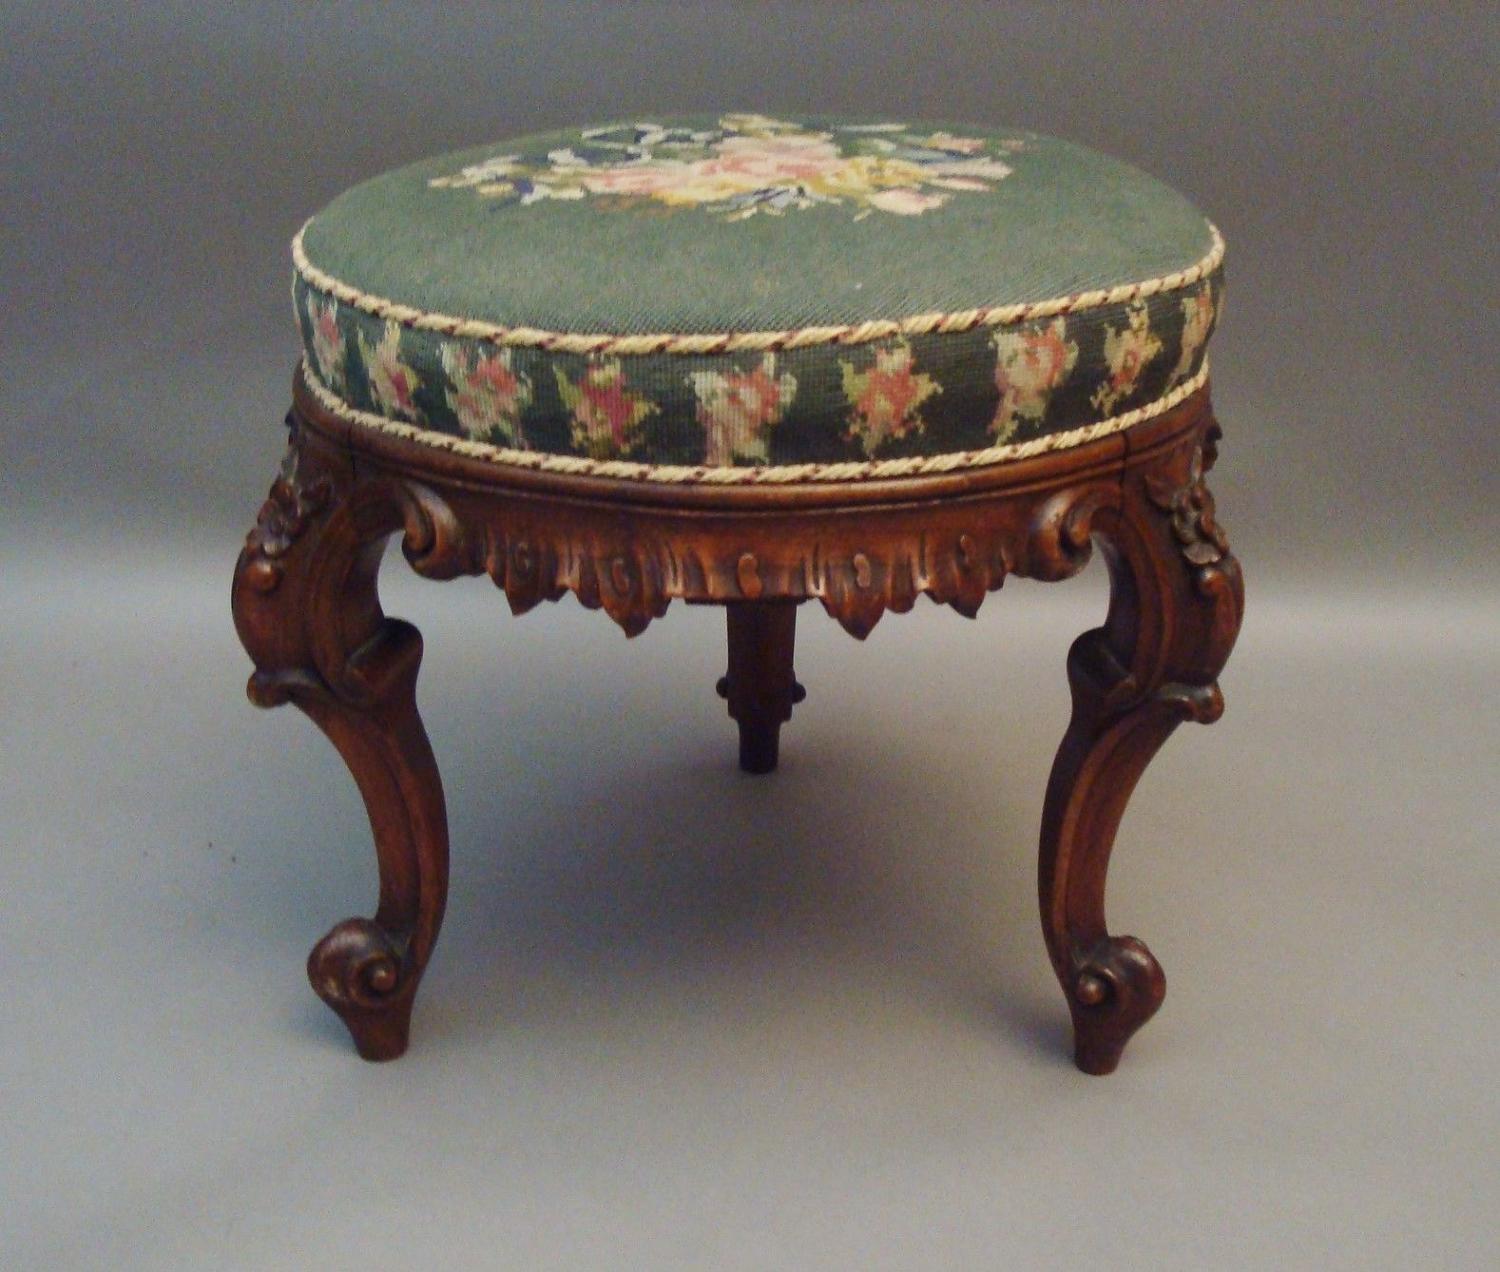 Victorian circular stool